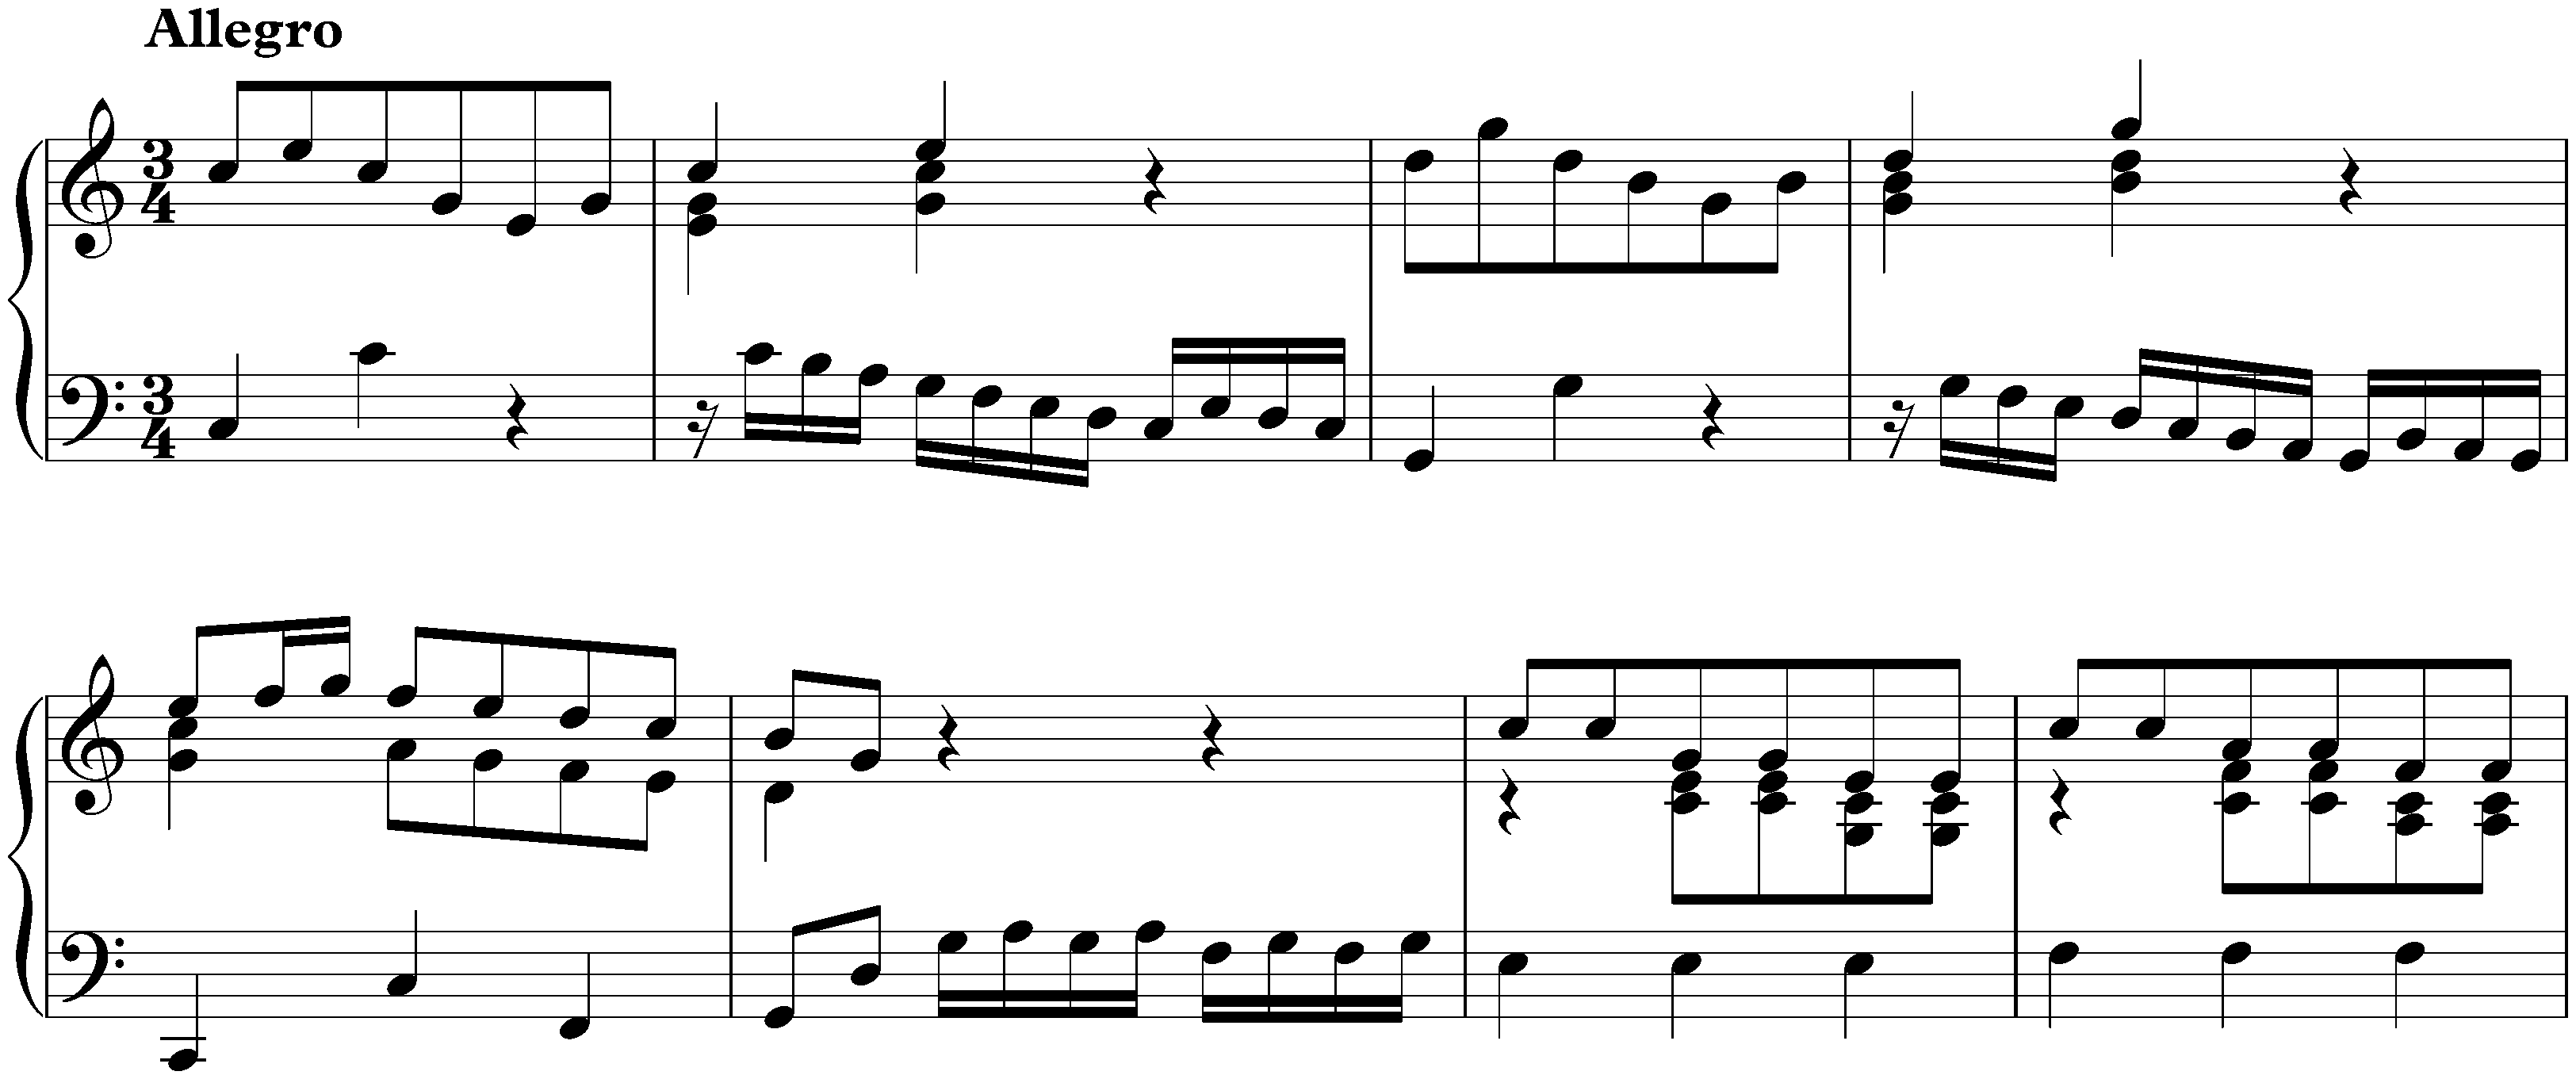 Concerto in C major after Antonio Vivaldi, BWV 976; 3. Allegro